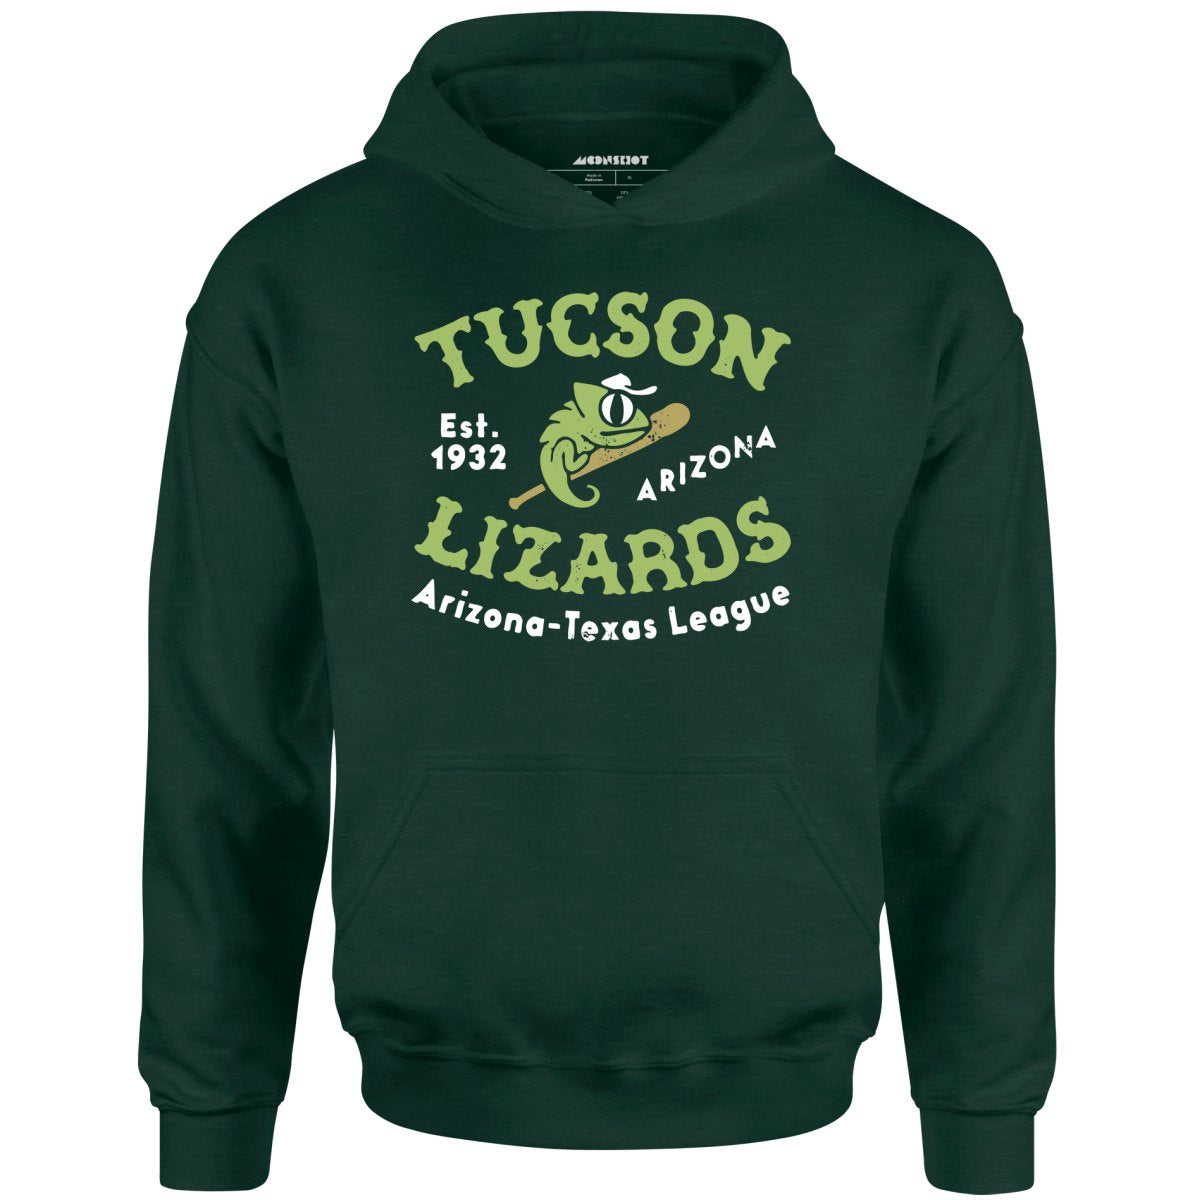 Tucson Lizards - Arizona - Vintage Defunct Baseball Teams - Unisex Hoodie